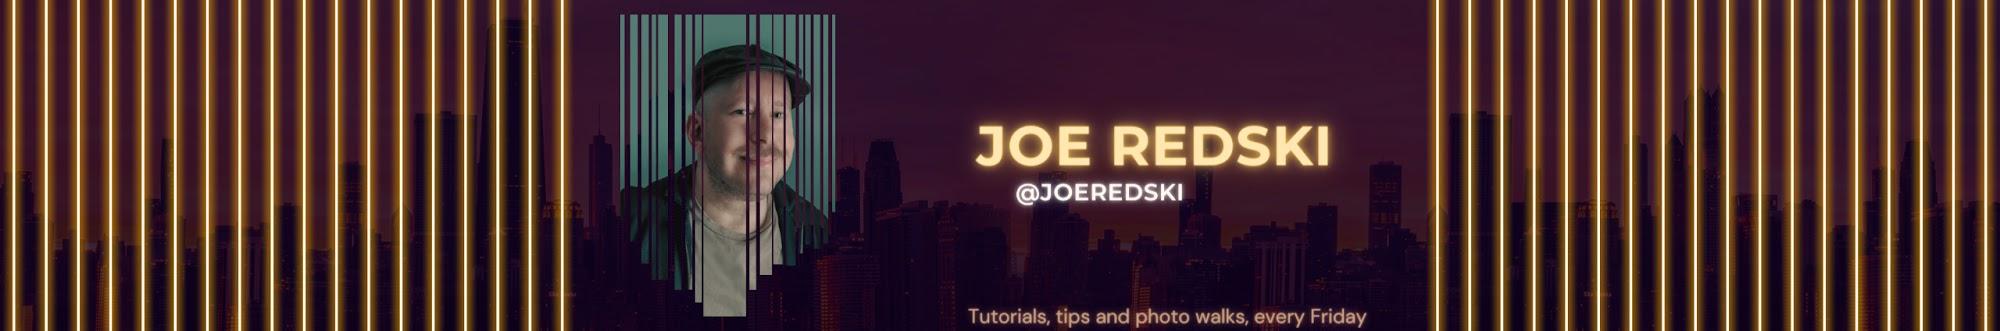 Joe Redski